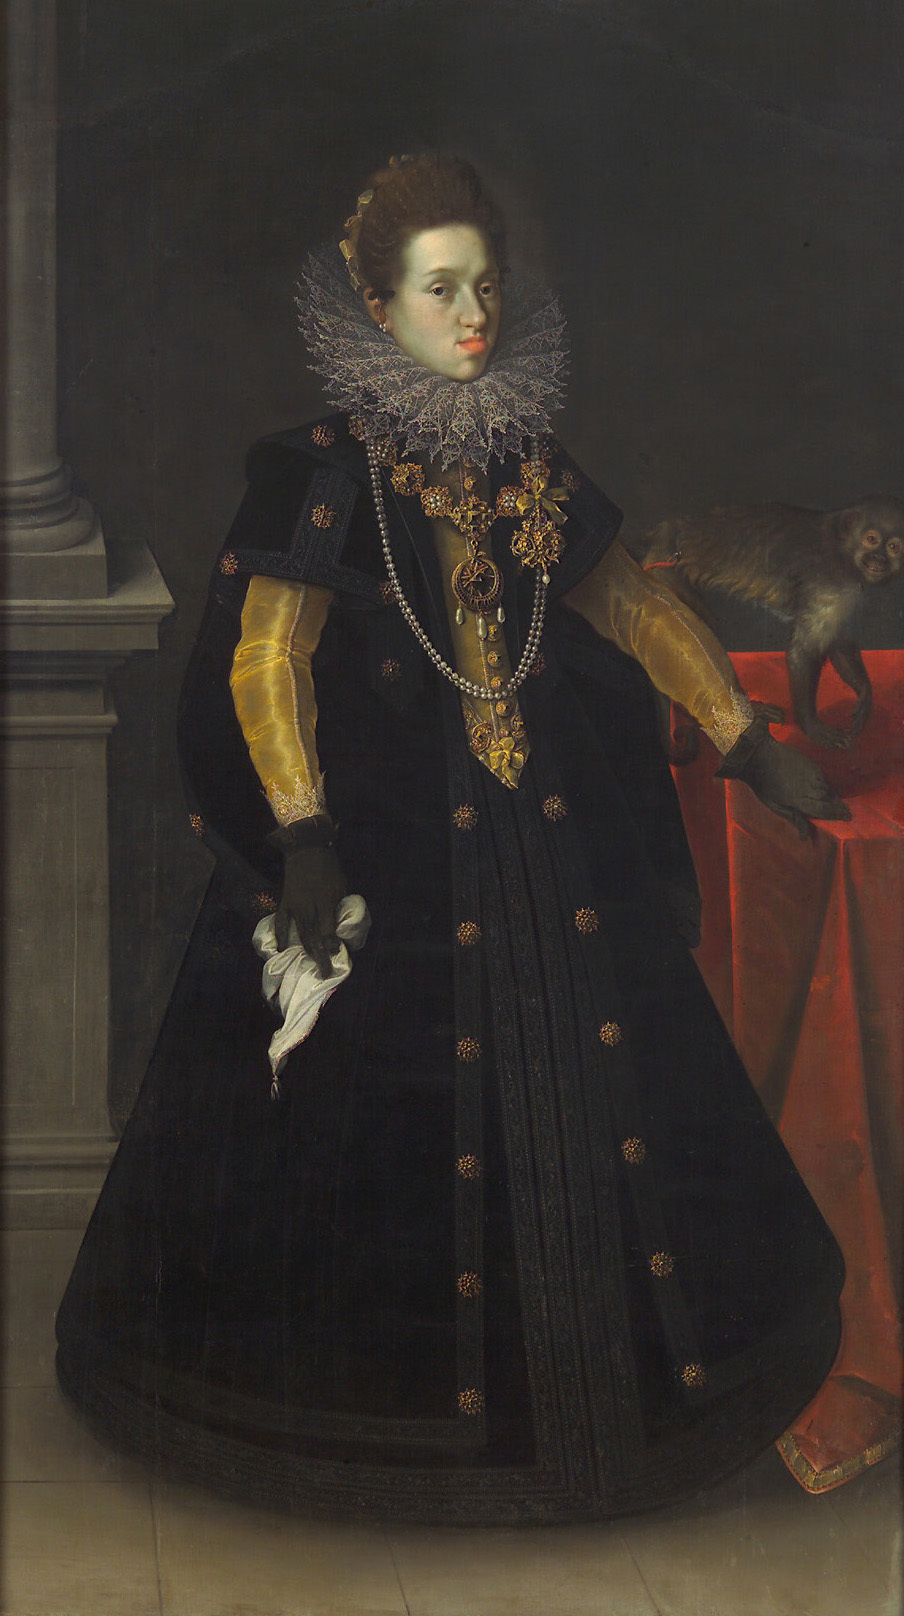 Joseph Heintz d. Ä. | Erzherzogin Konstanze (1588-1631), Königin von Polen, mit einer Meerkatze | Displayed motifs: Fashion accessory, Monkey, Human face, Woman, Clothing, Madonna, Dress, 